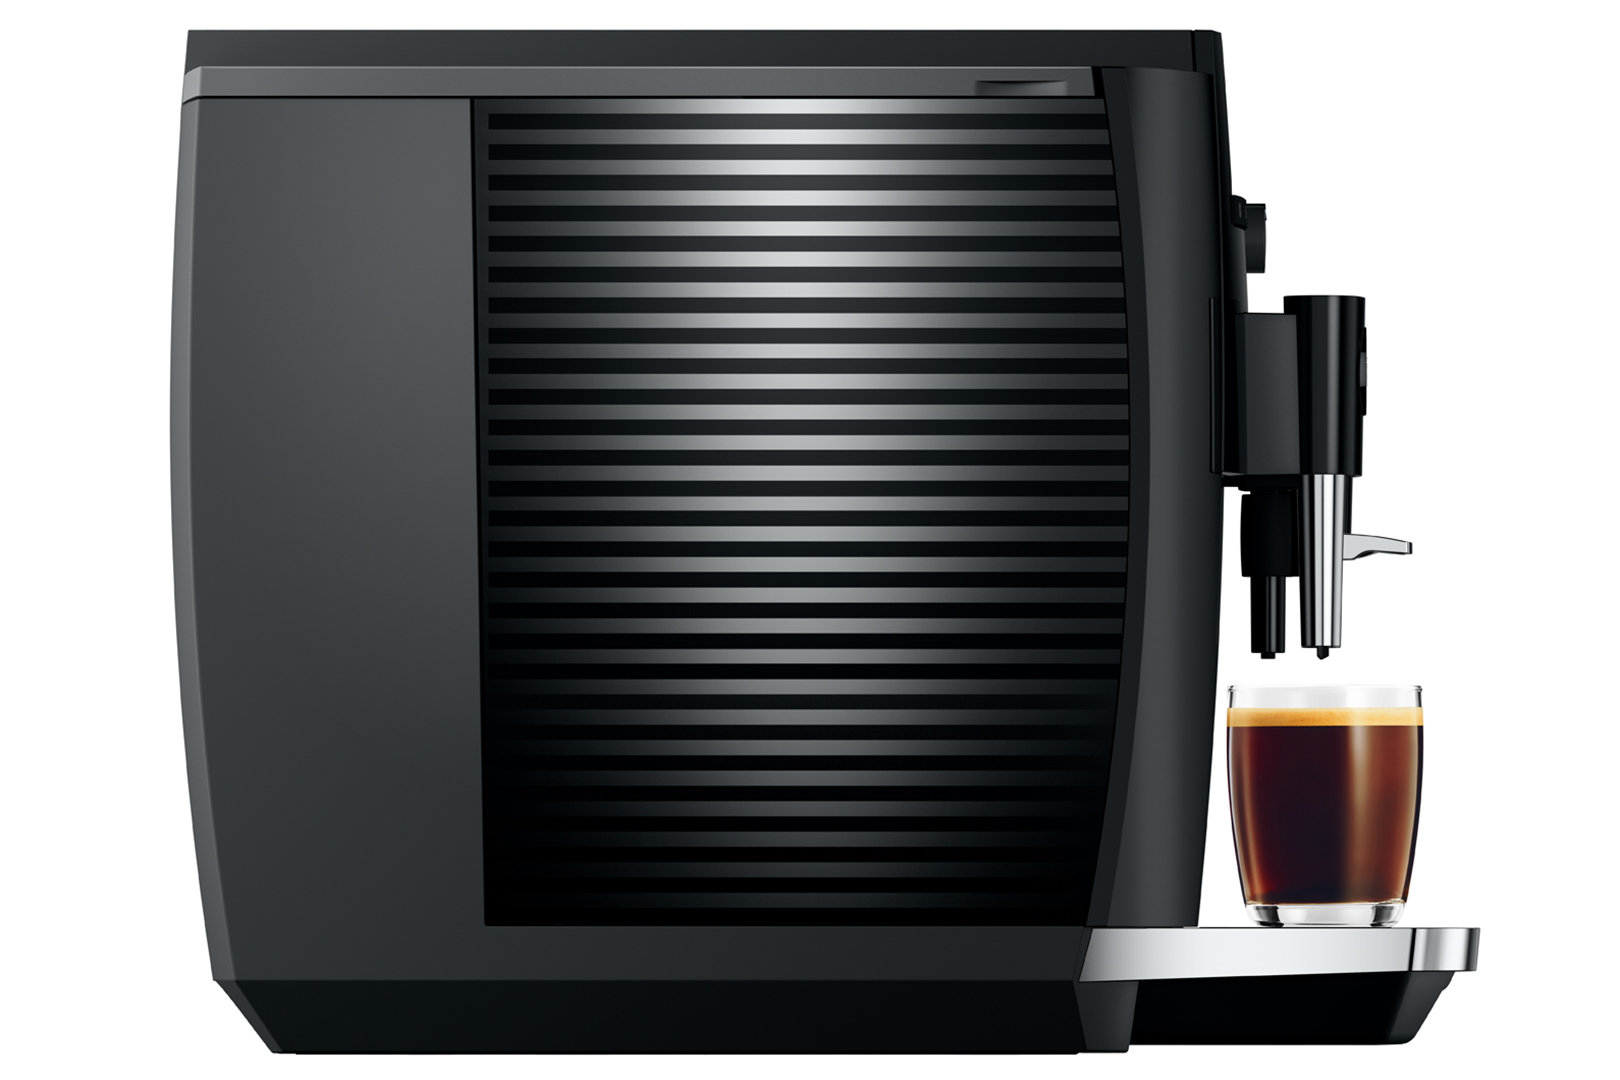 Jura - E4 Piano Black Superautomatic Espresso Machine - 15466